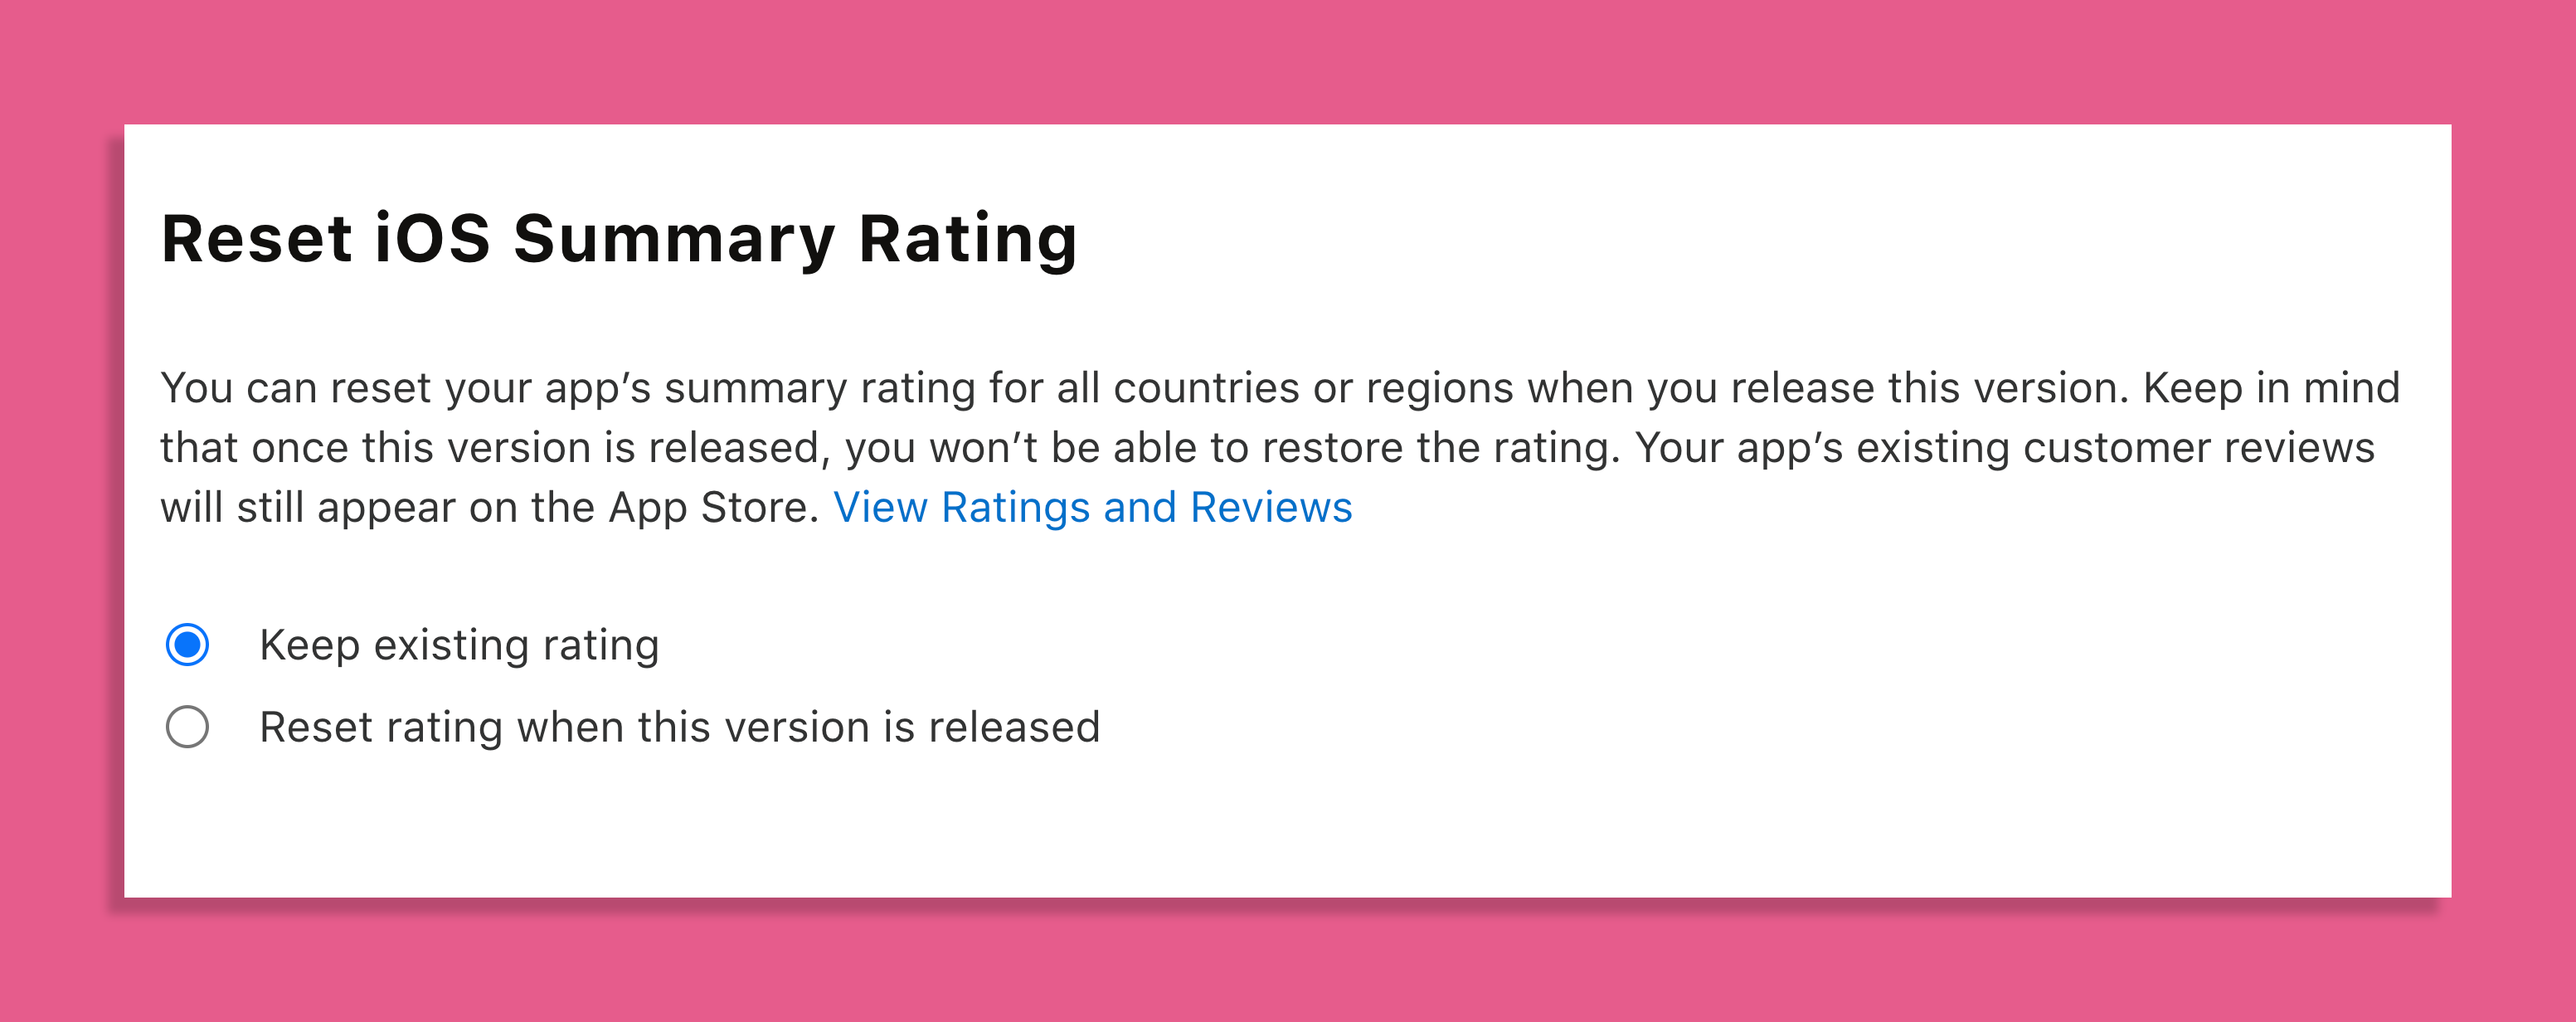 Nulstilling af iOS rating